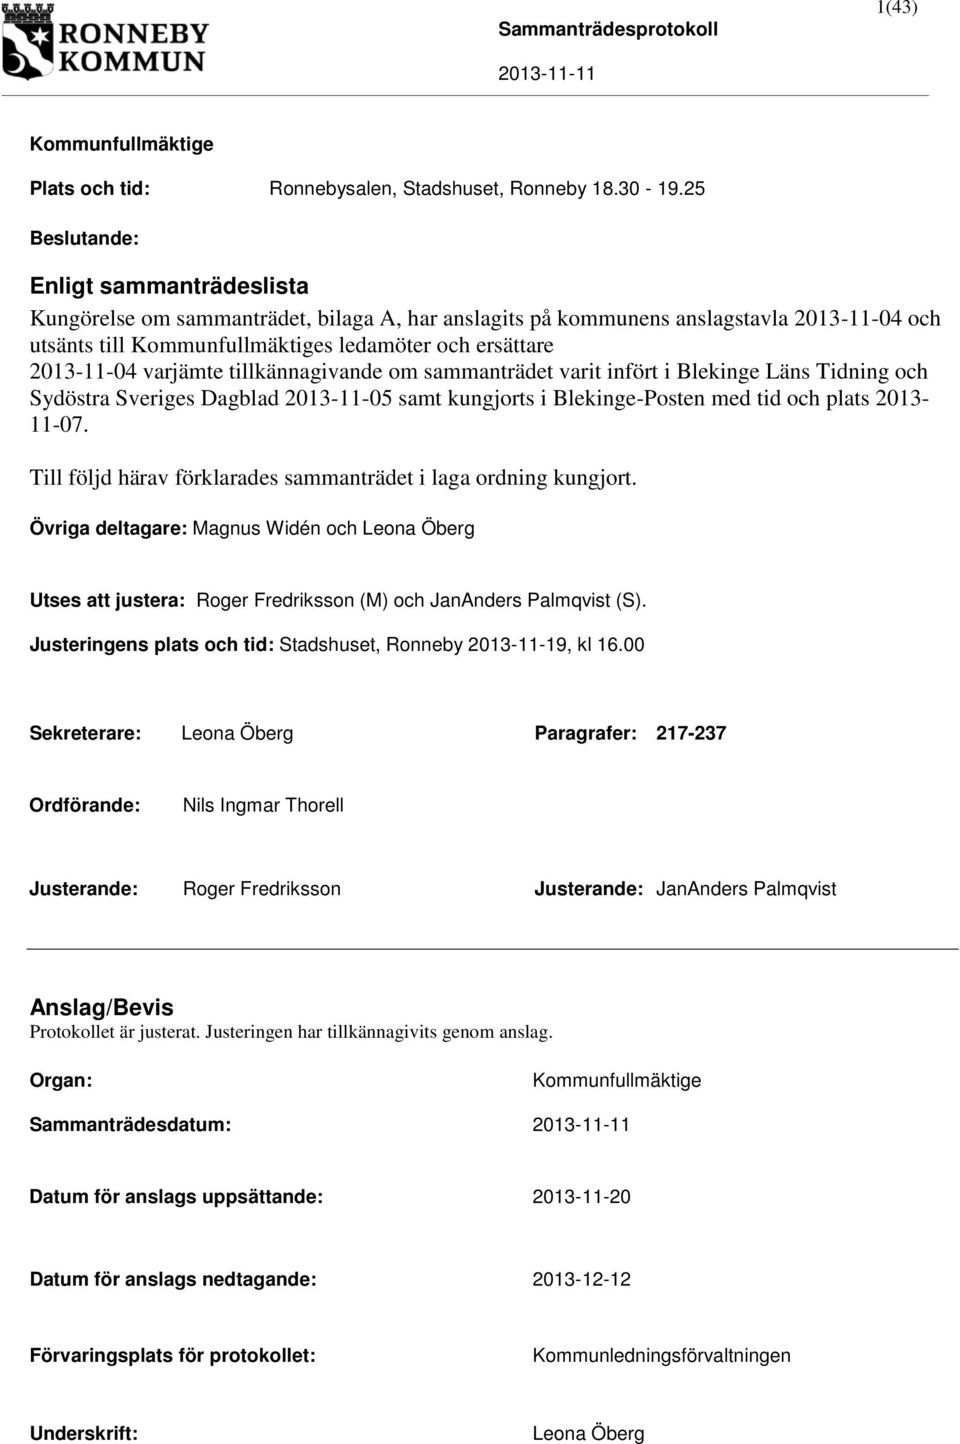 varjämte tillkännagivande om sammanträdet varit infört i Blekinge Läns Tidning och Sydöstra Sveriges Dagblad 2013-11-05 samt kungjorts i Blekinge-Posten med tid och plats 2013-11-07.